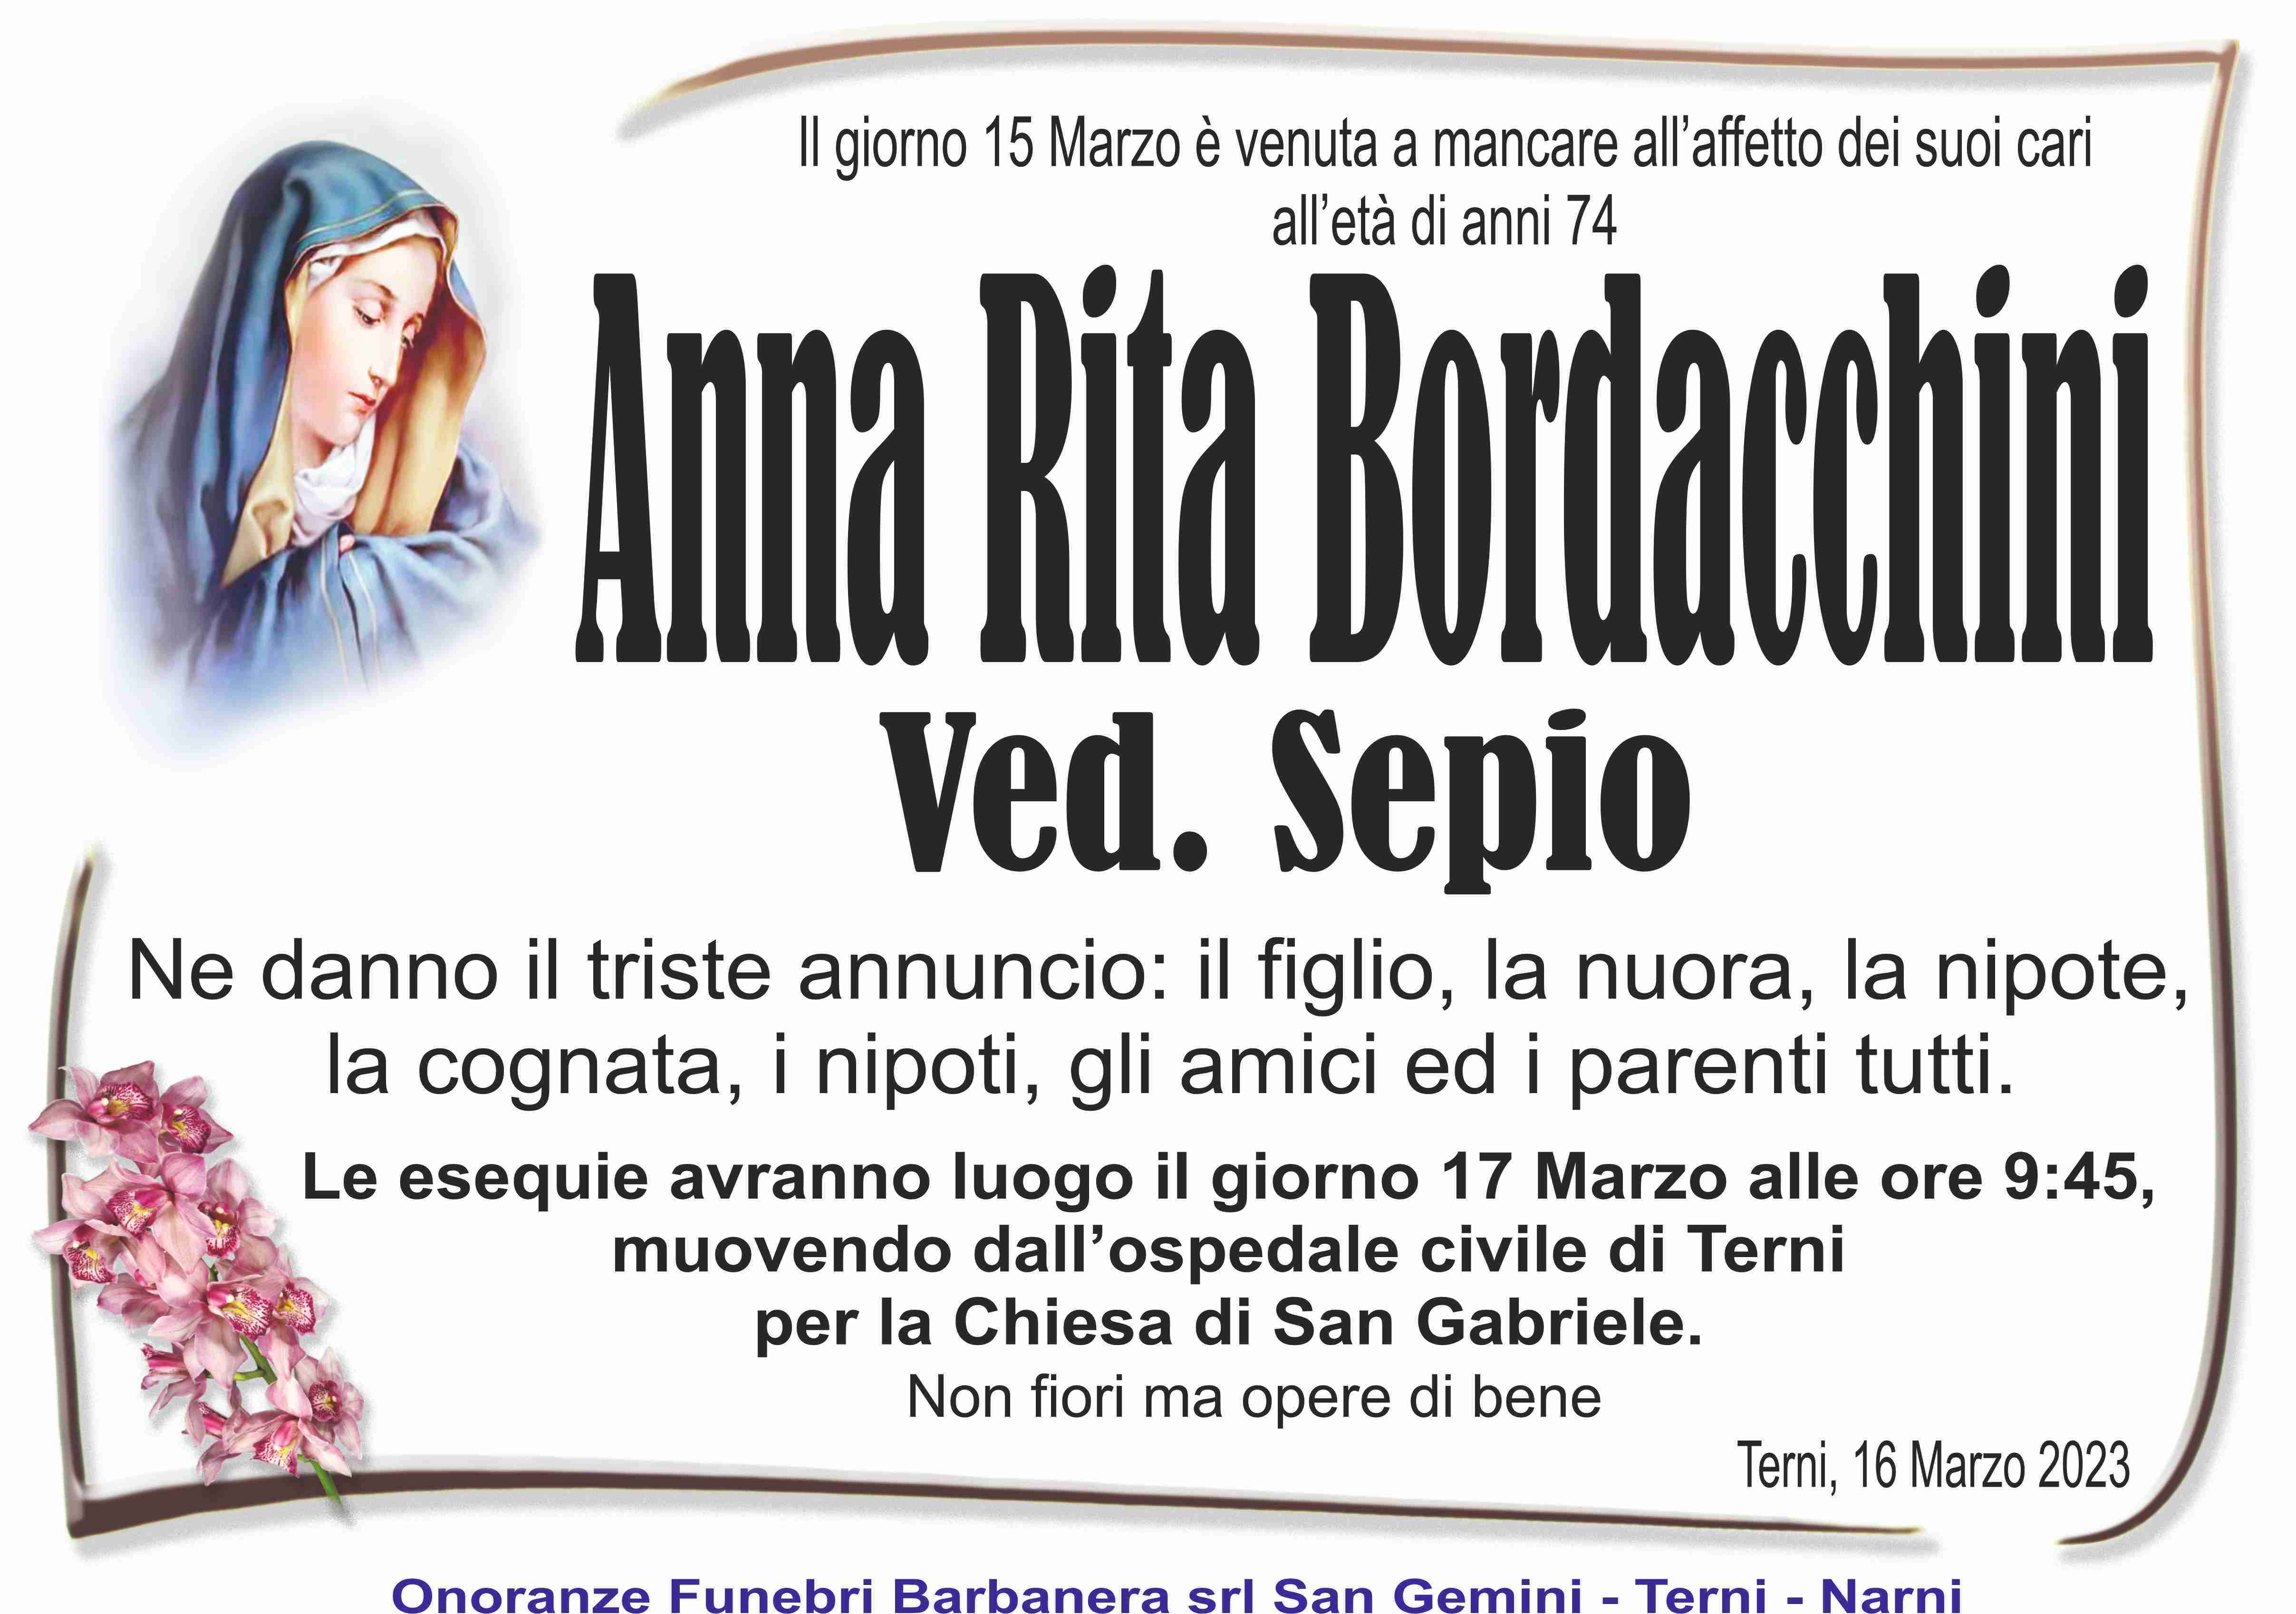 Anna Rita Bordacchini